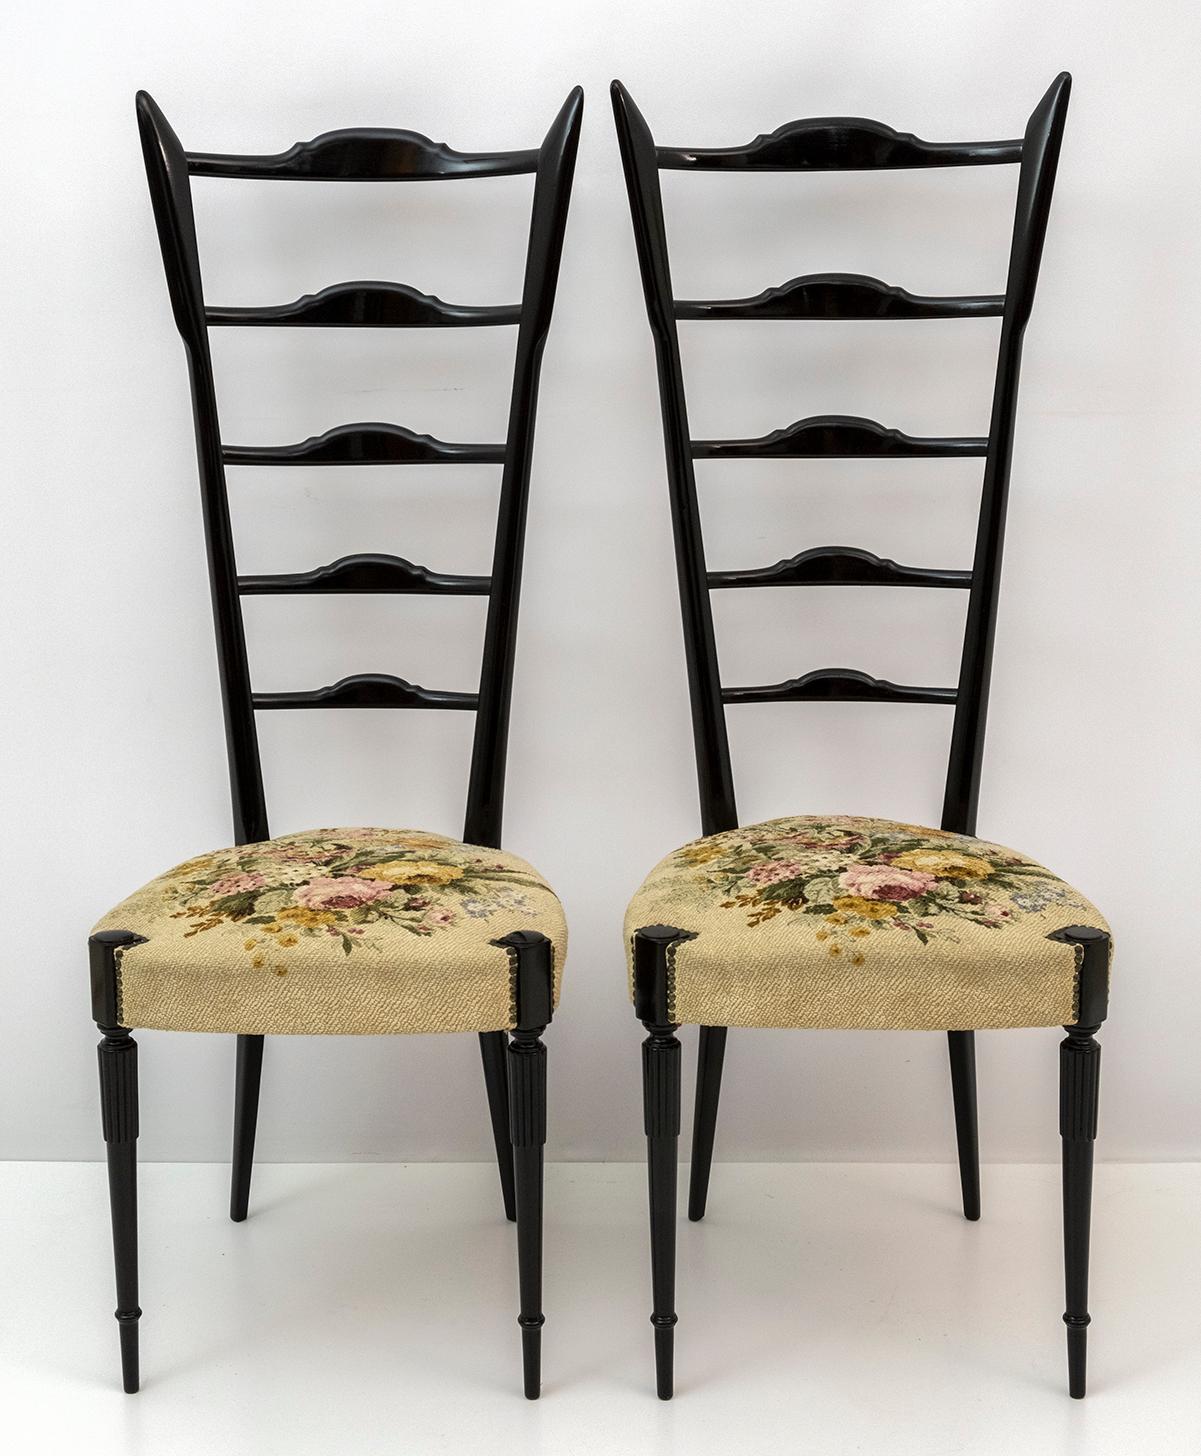 Cette paire de chaises Chiavari au dossier haut typique a été conçue par Gio Ponti.